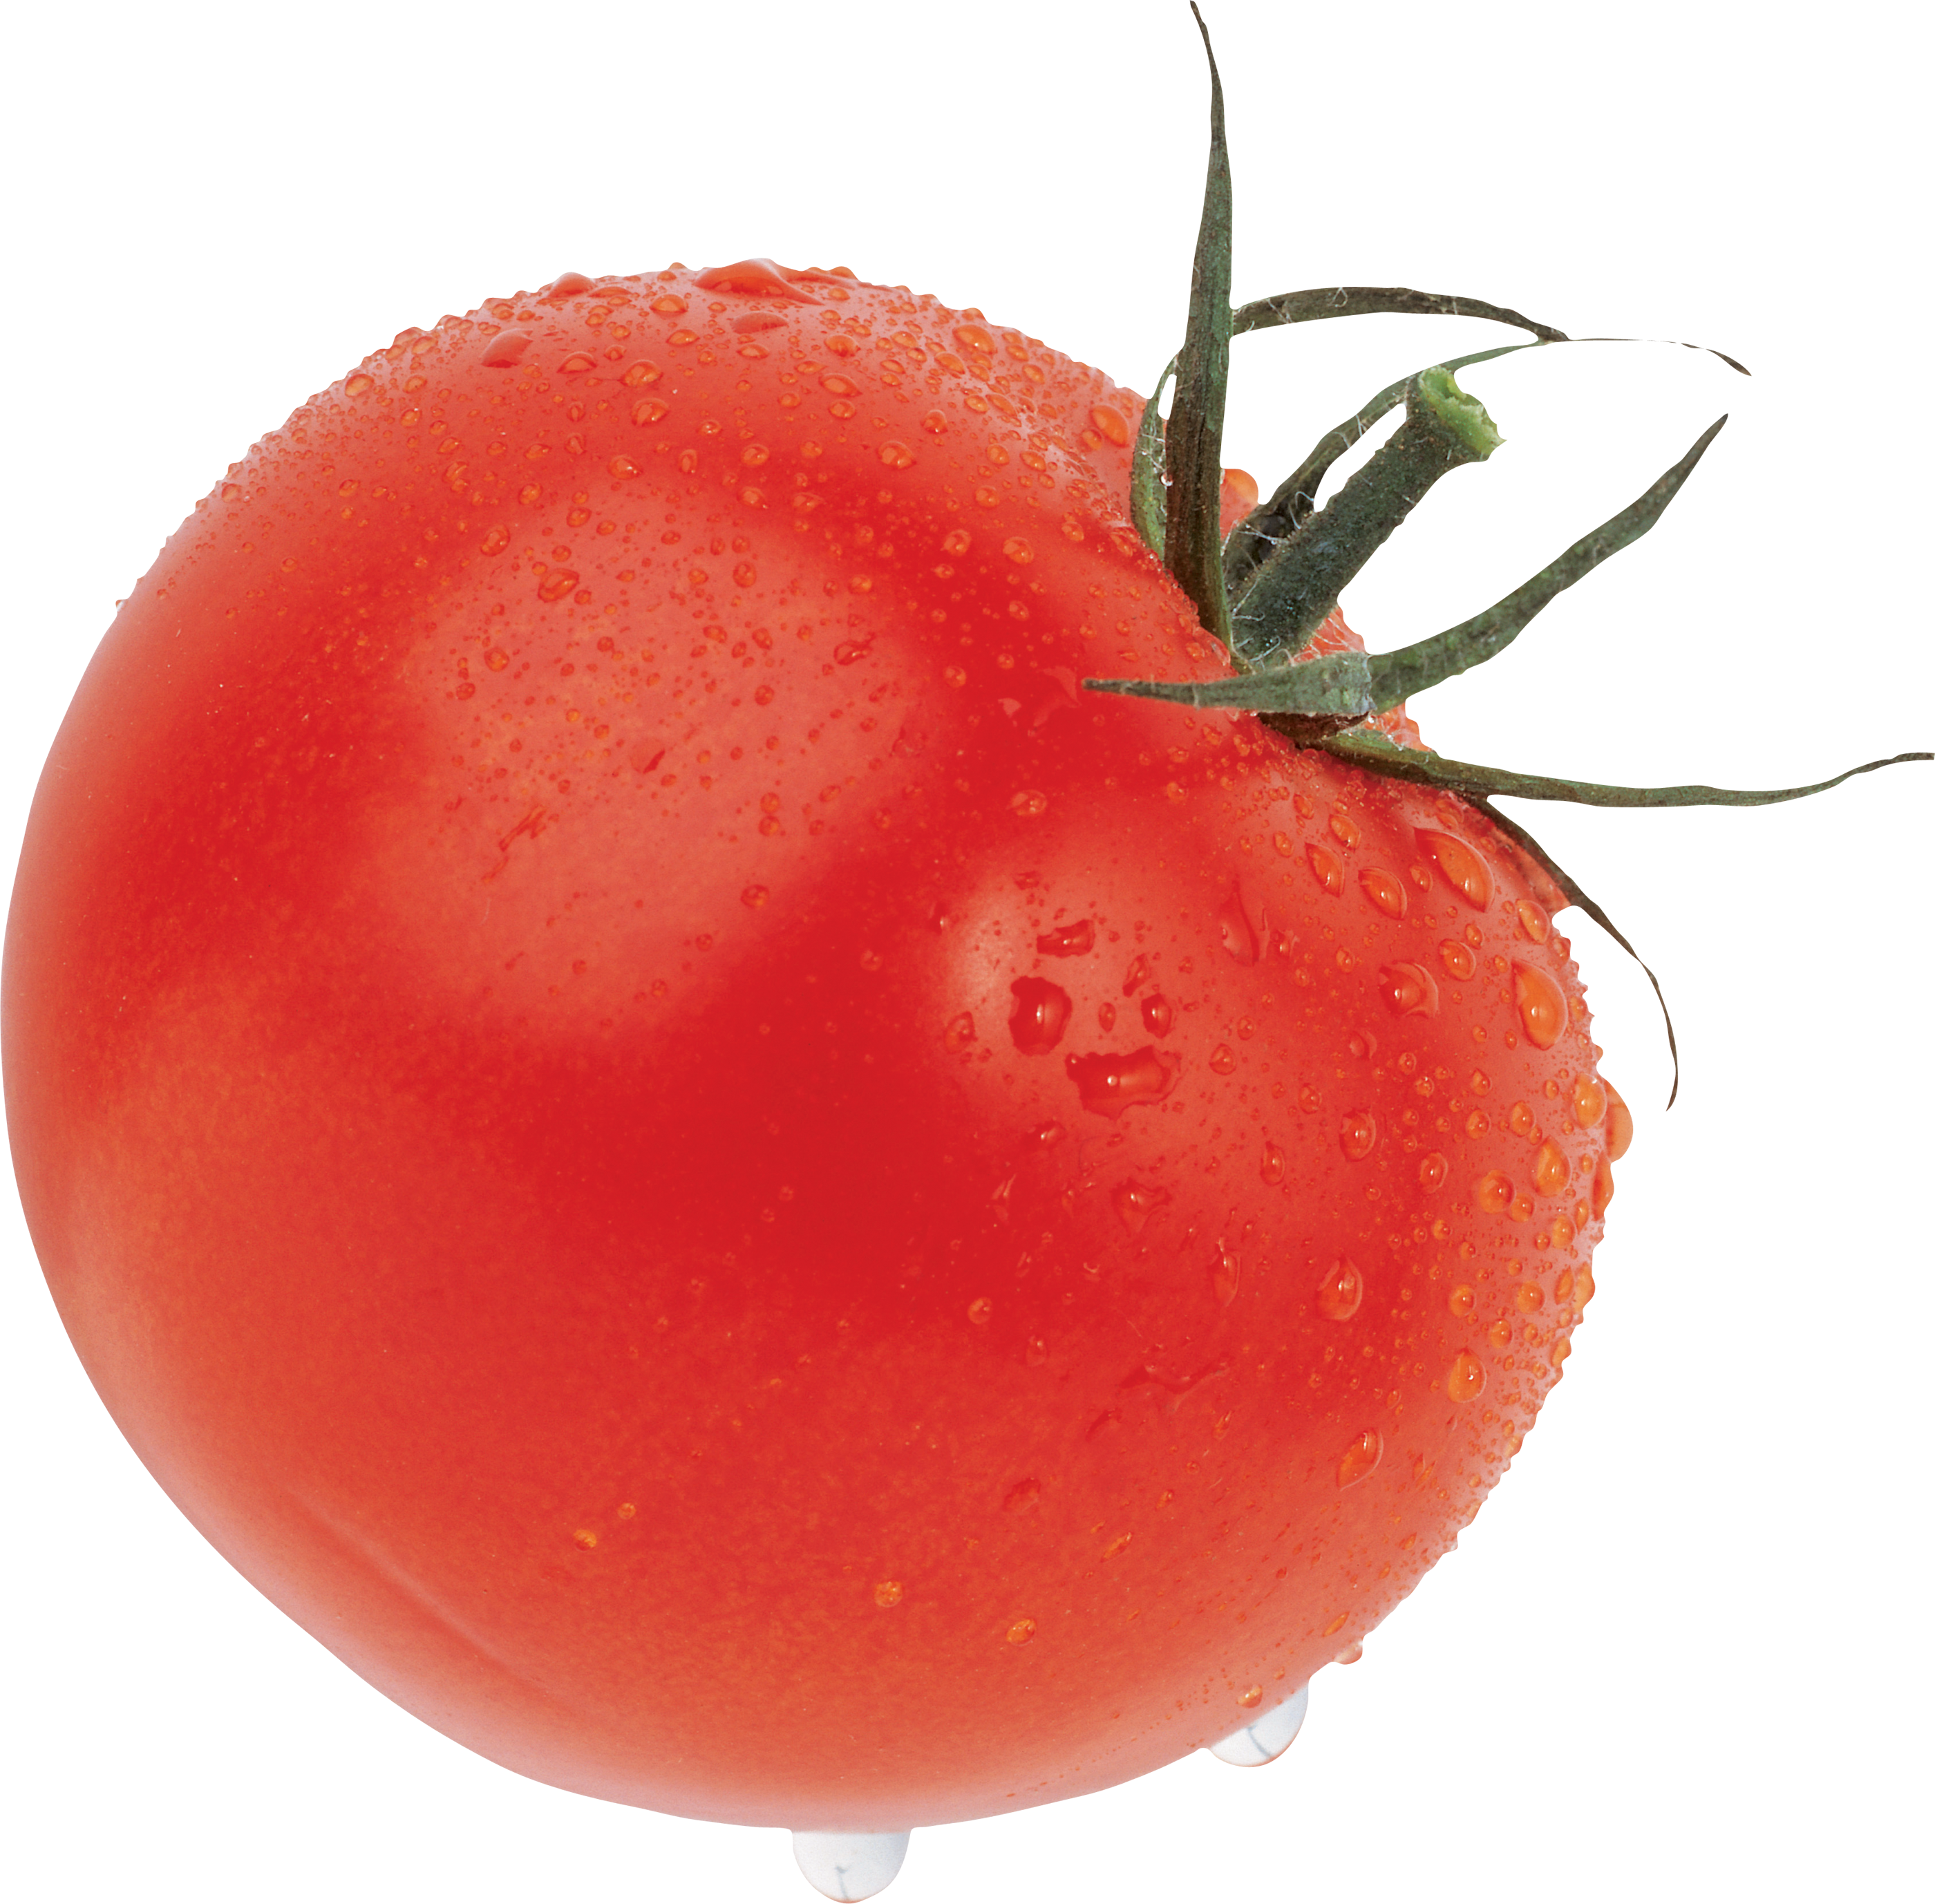 Pomidor duży czerwony